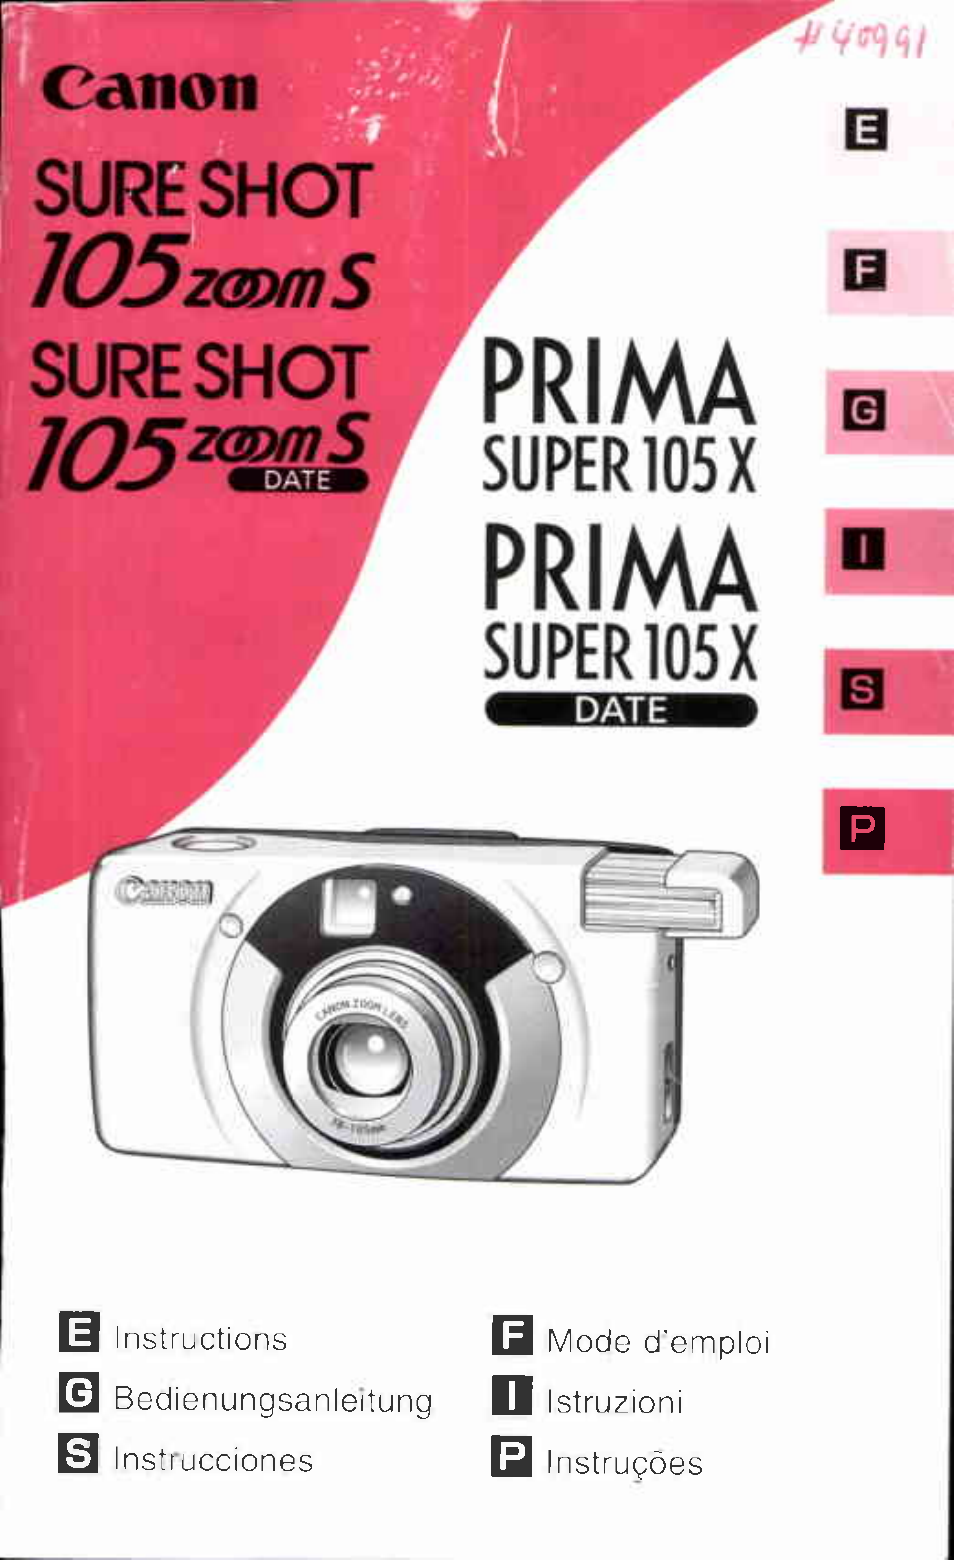 Prima Super 105X DATE